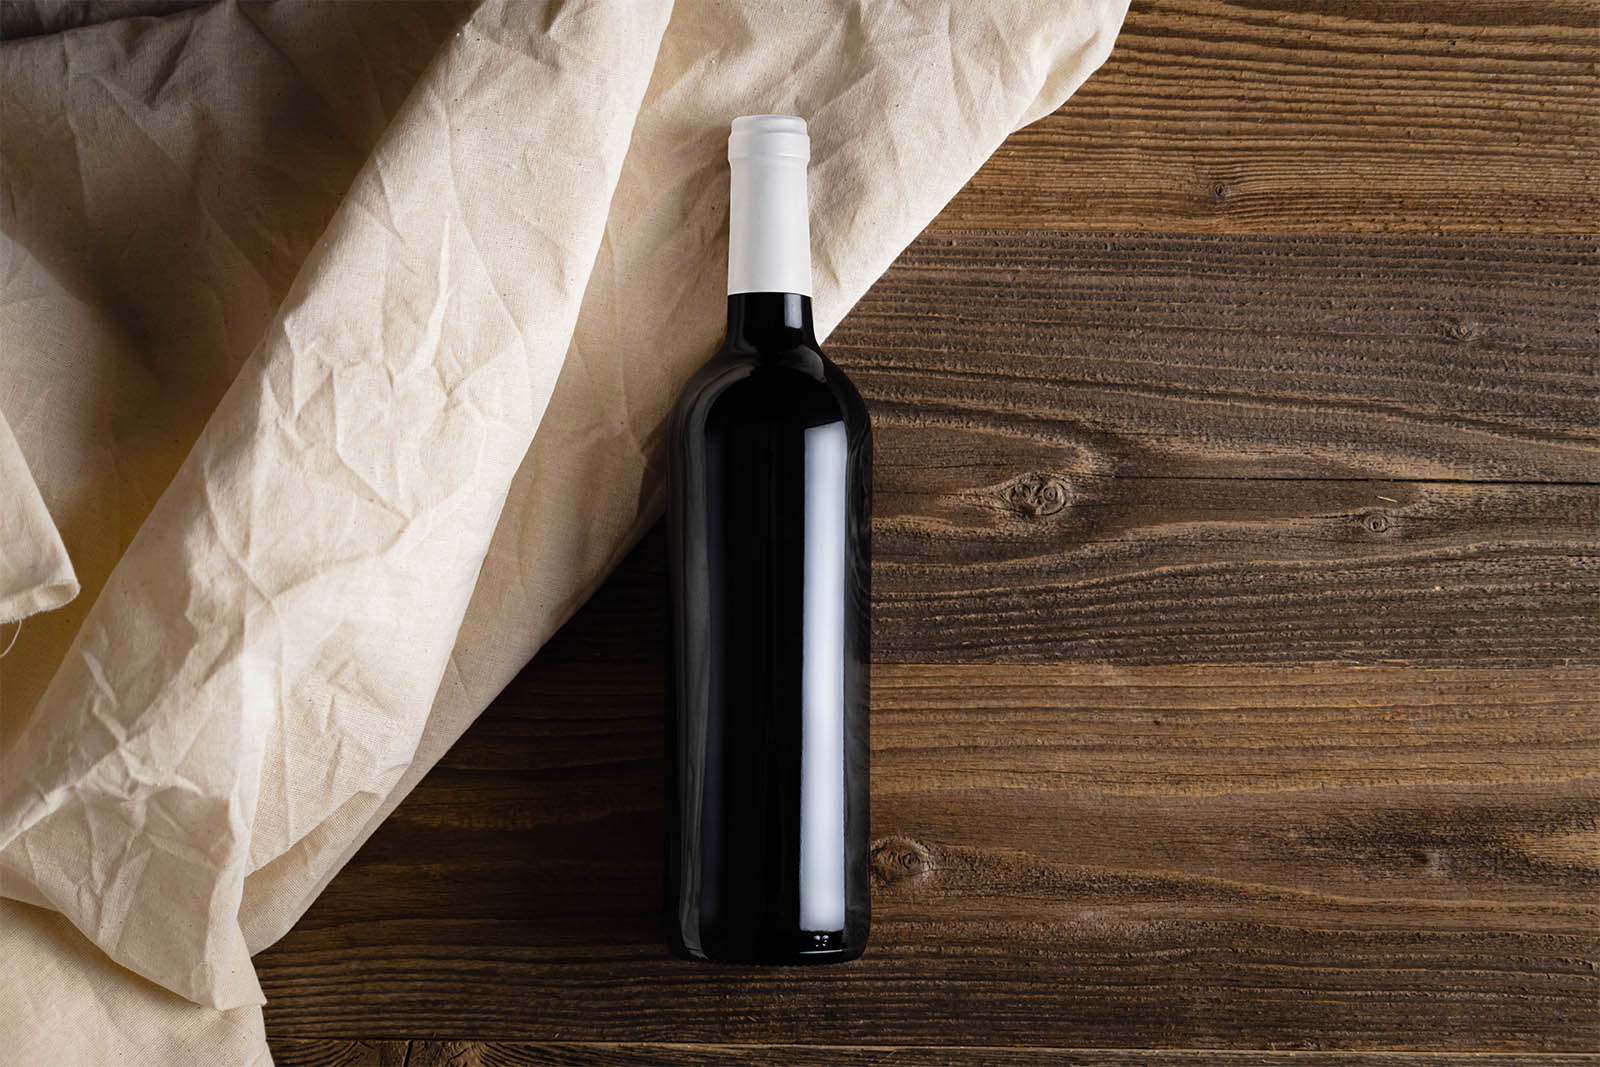 Wine bottle on wooden planks mockups